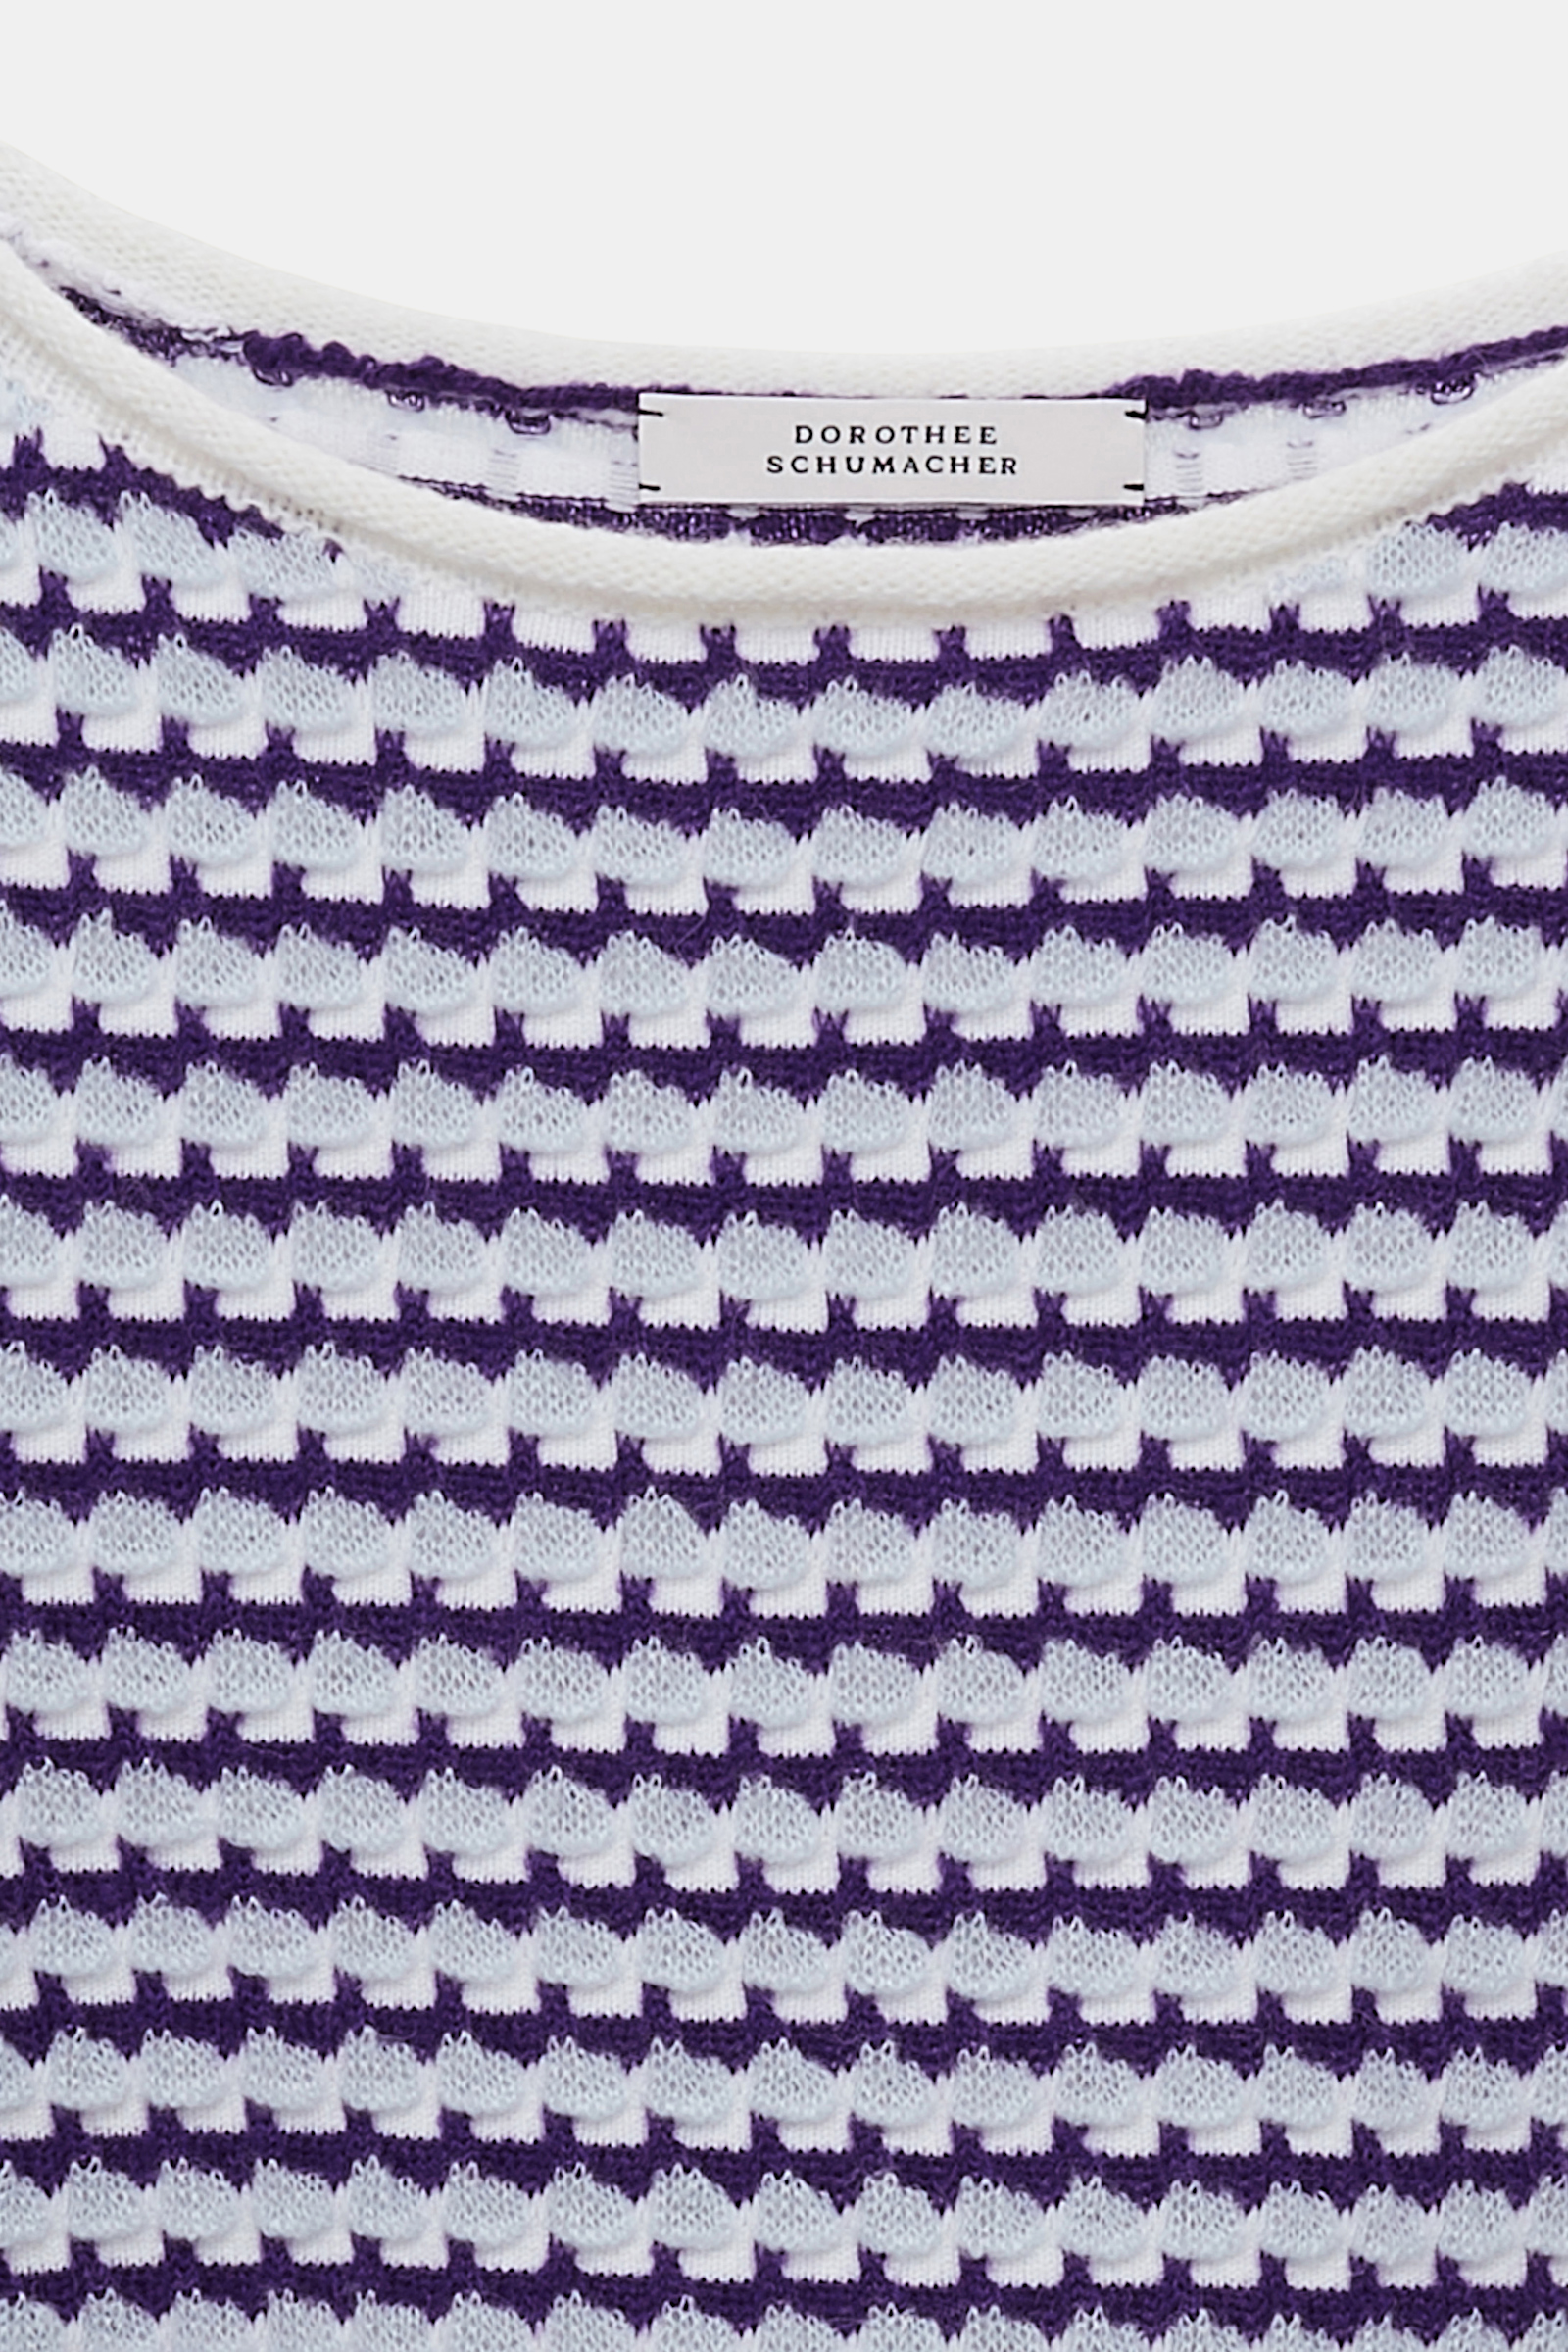 Dorothee Schumacher Jacquard knit top with bateaux neckline purple blue white mix